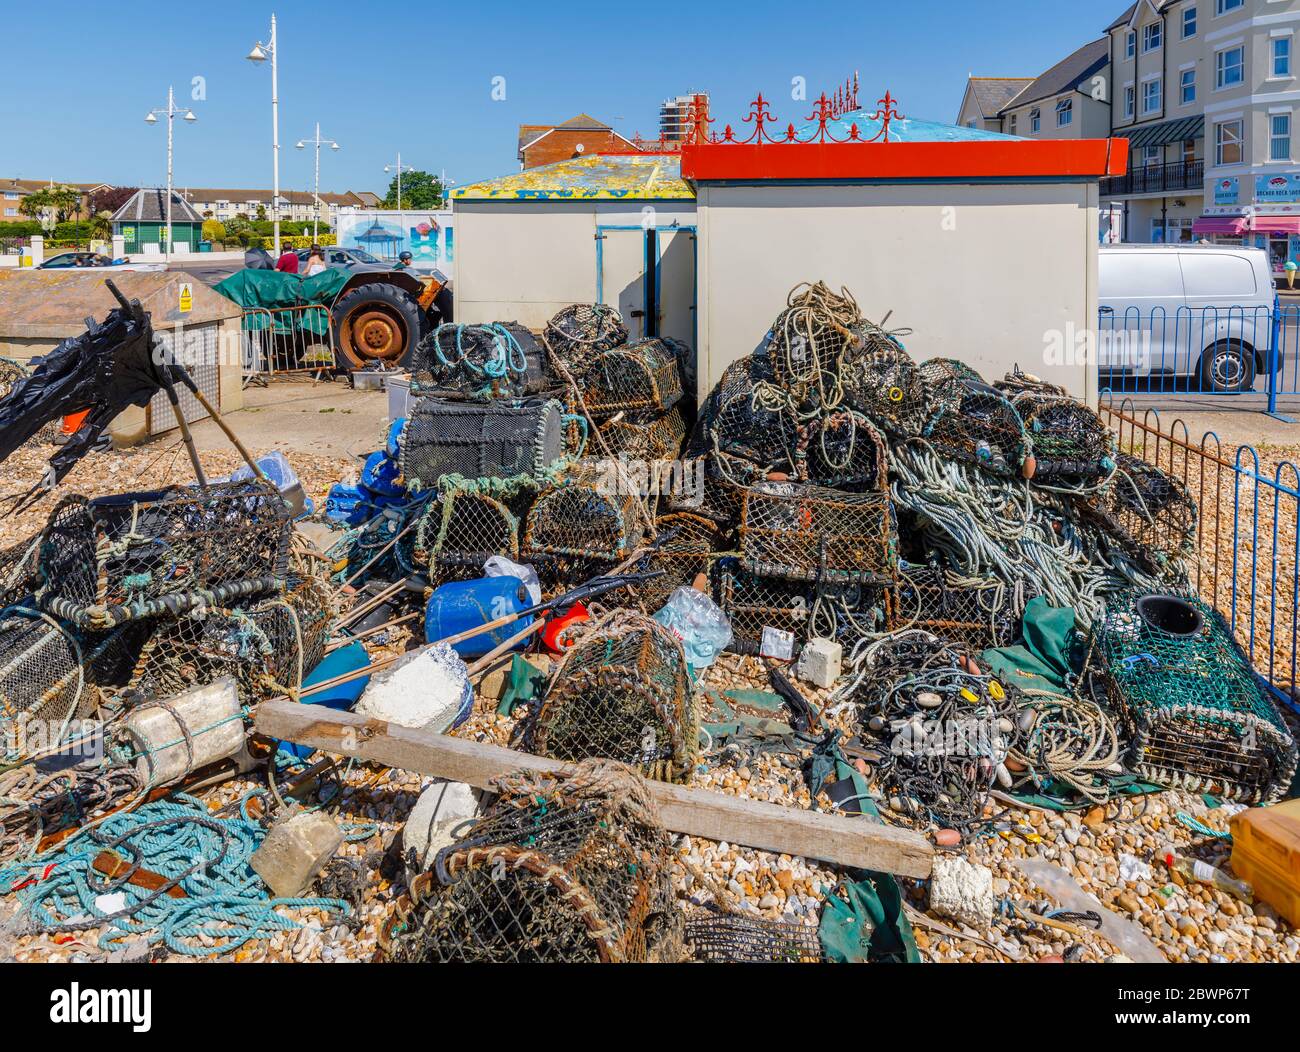 D'anciennes marmites de homard bien utilisées se sont accumulées dans un tas désordonné sur la plage de Bognor Regis, une ville balnéaire de West Sussex, sur la côte sud de l'Angleterre Banque D'Images